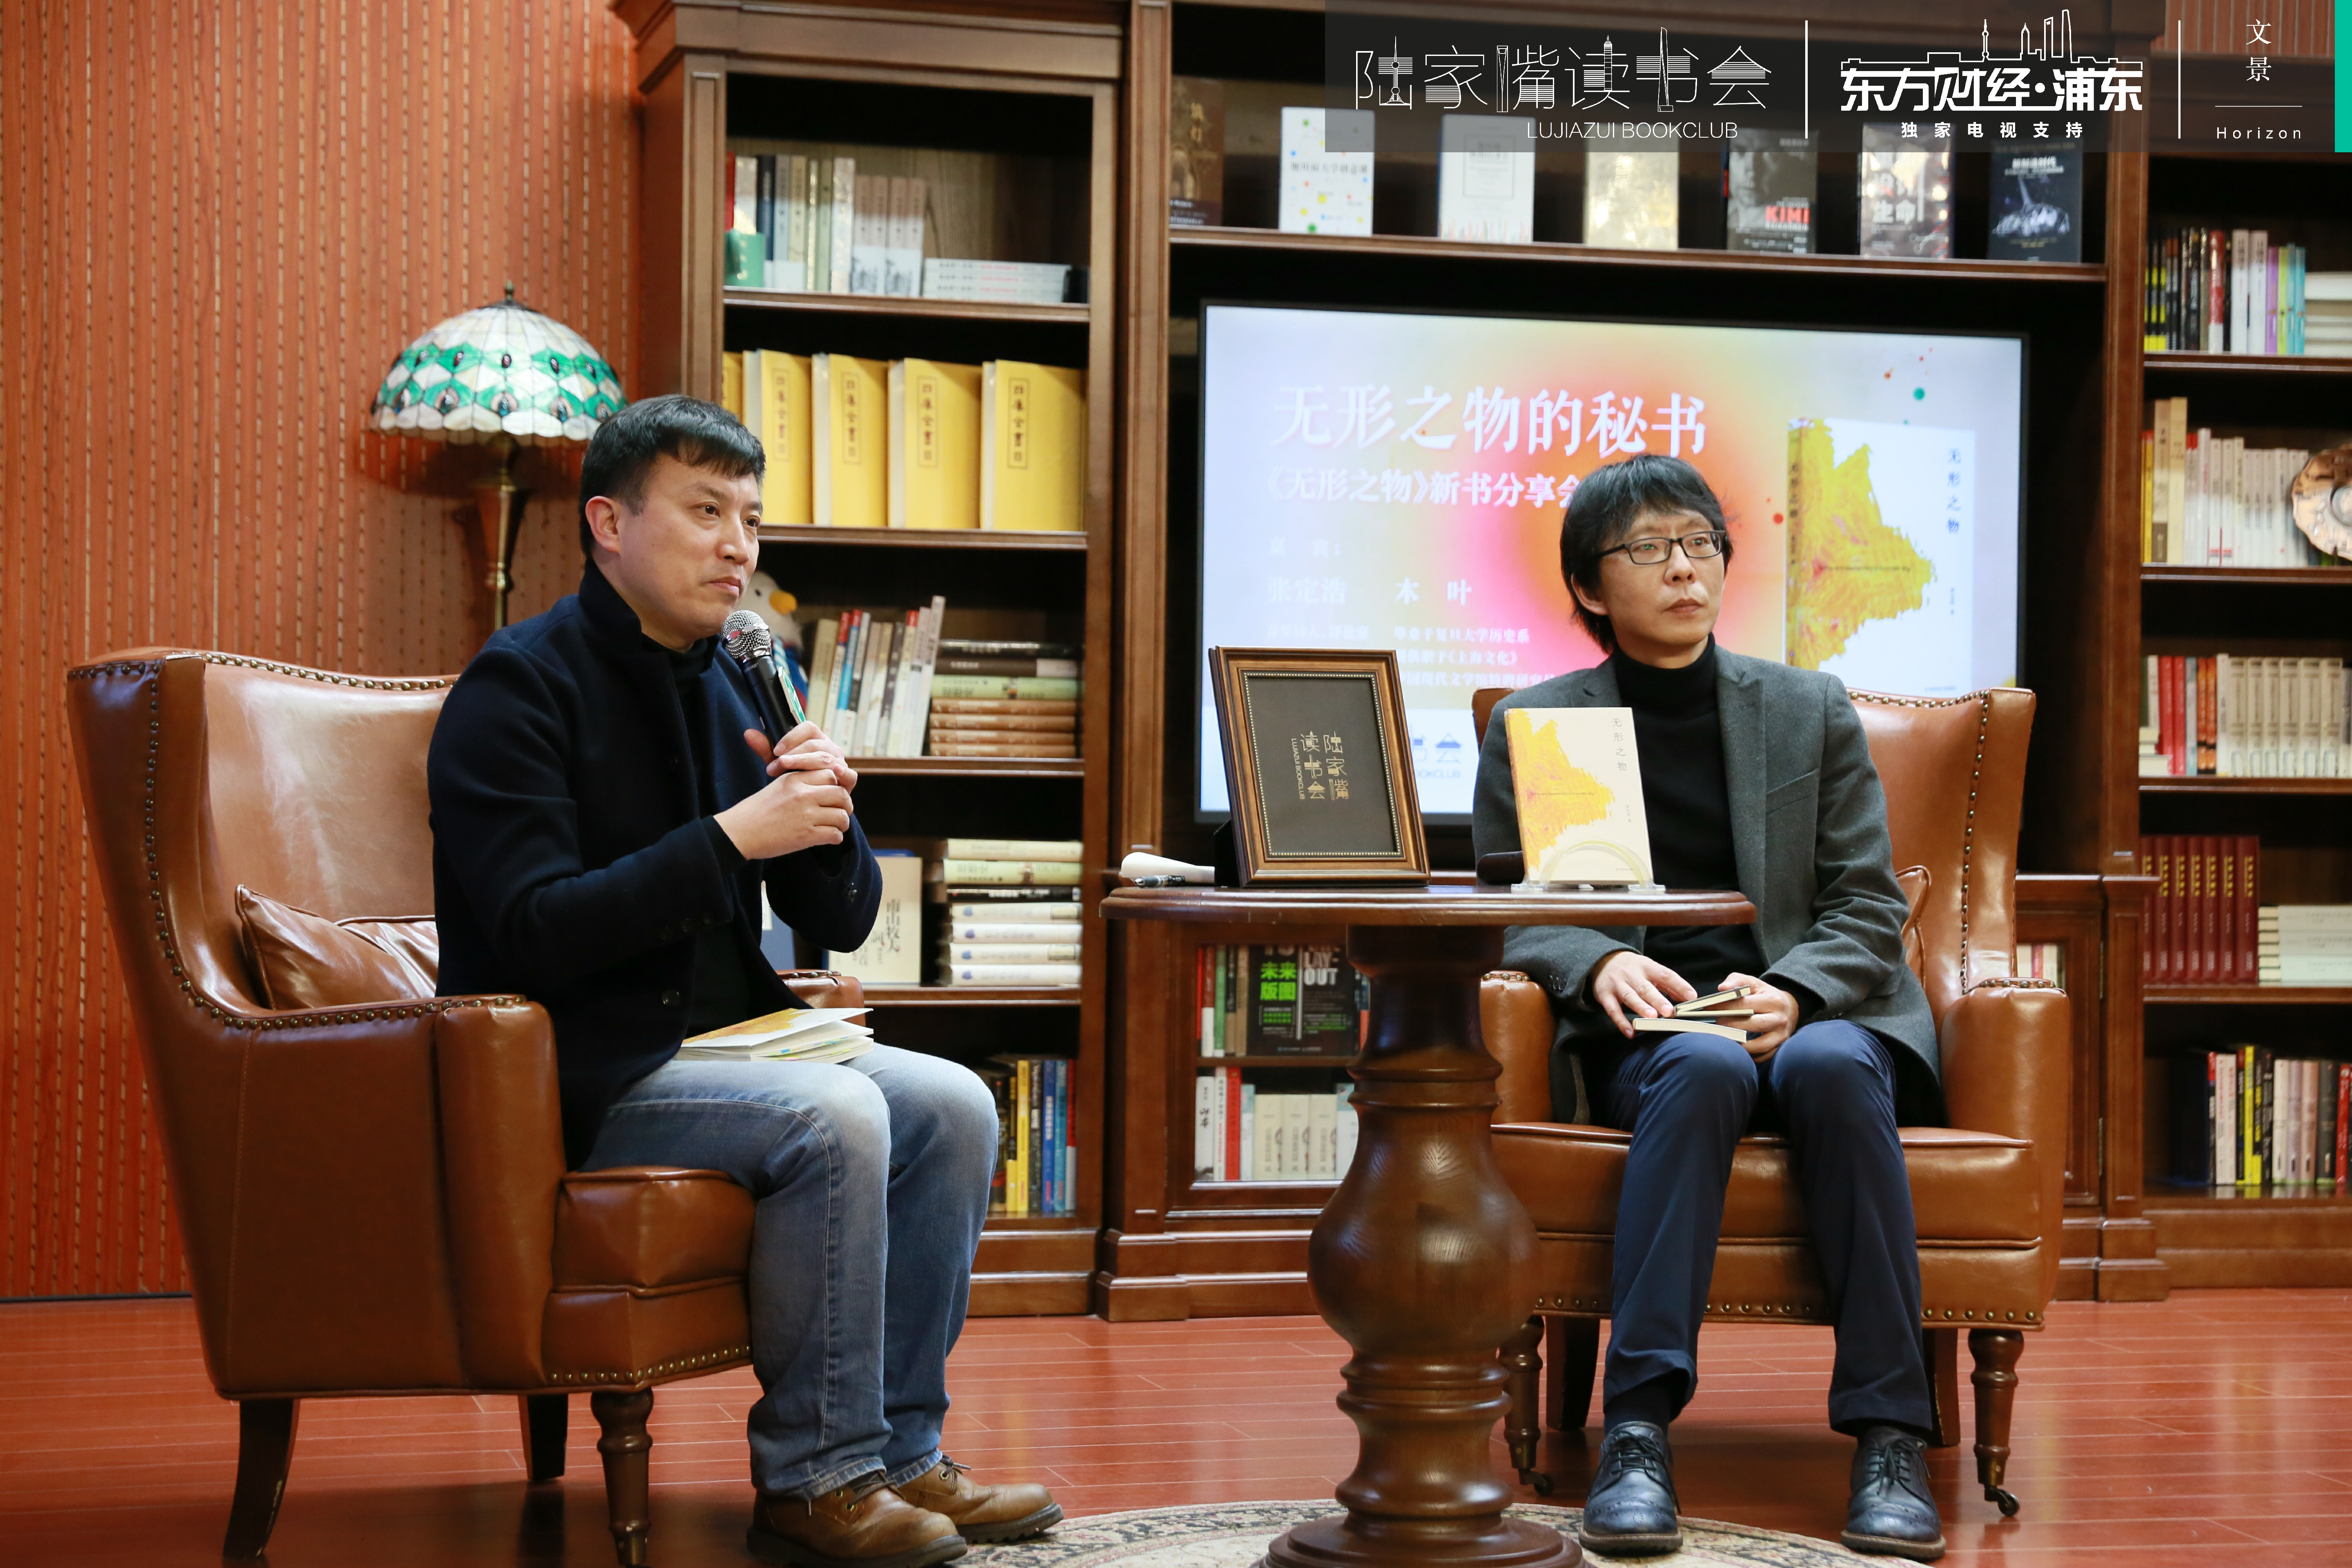 3月5日，诗人、评论家张定浩（右）携新书《无形之物》做客陆家嘴读书会，与另一位诗人、评论家木叶（左）就文学批评畅所欲言。